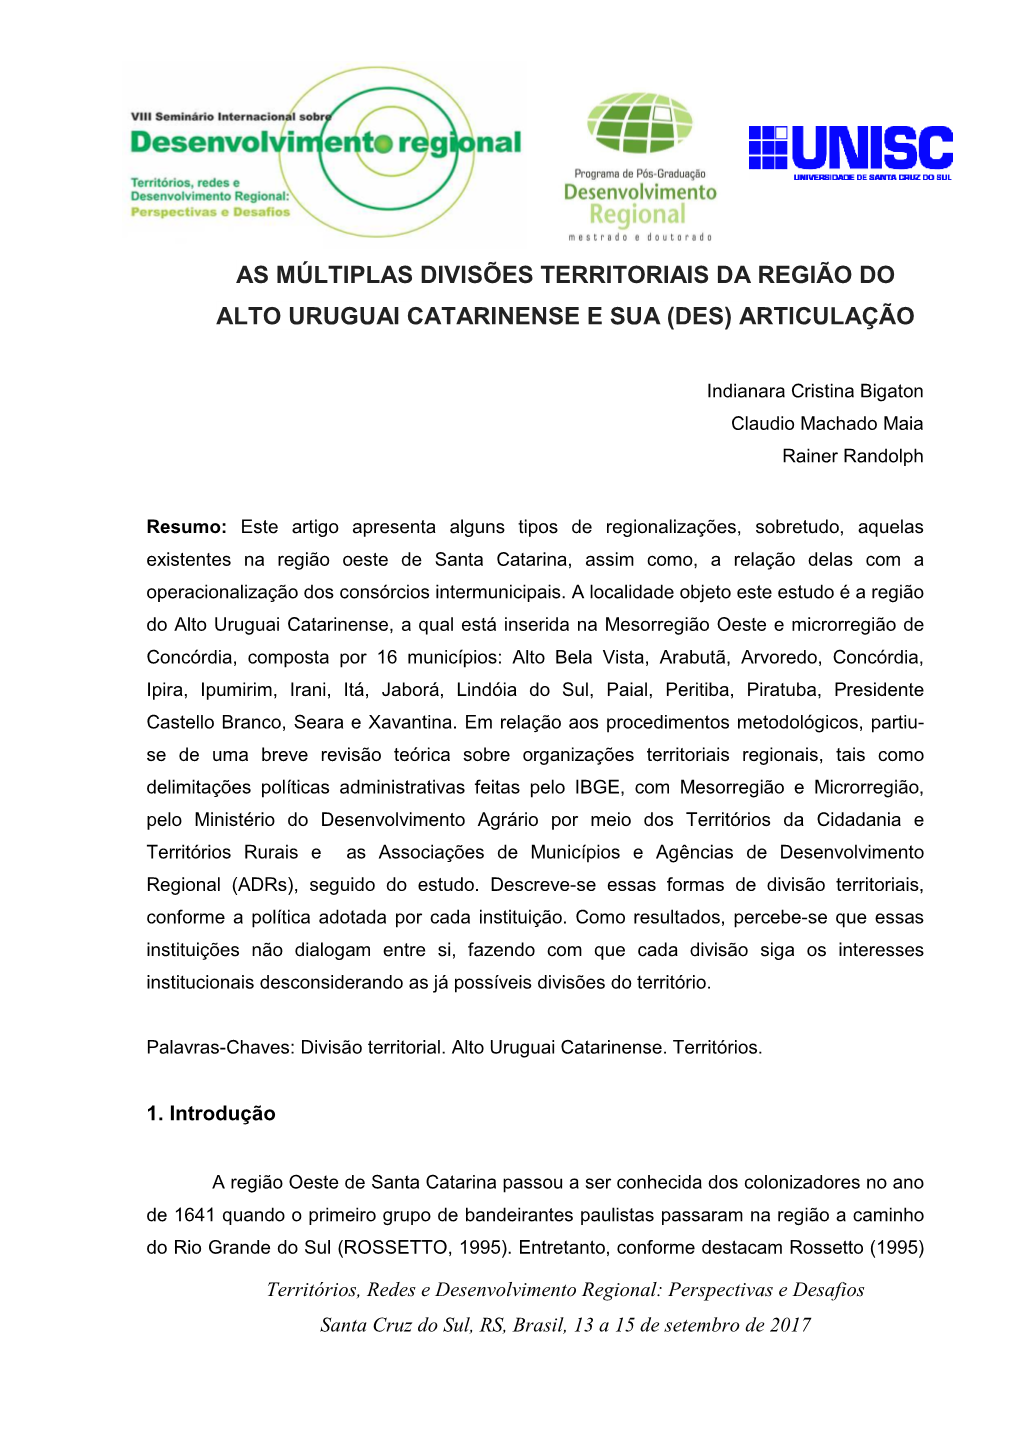 As Múltiplas Divisões Territoriais Da Região Do Alto Uruguai Catarinense E Sua (Des) Articulação